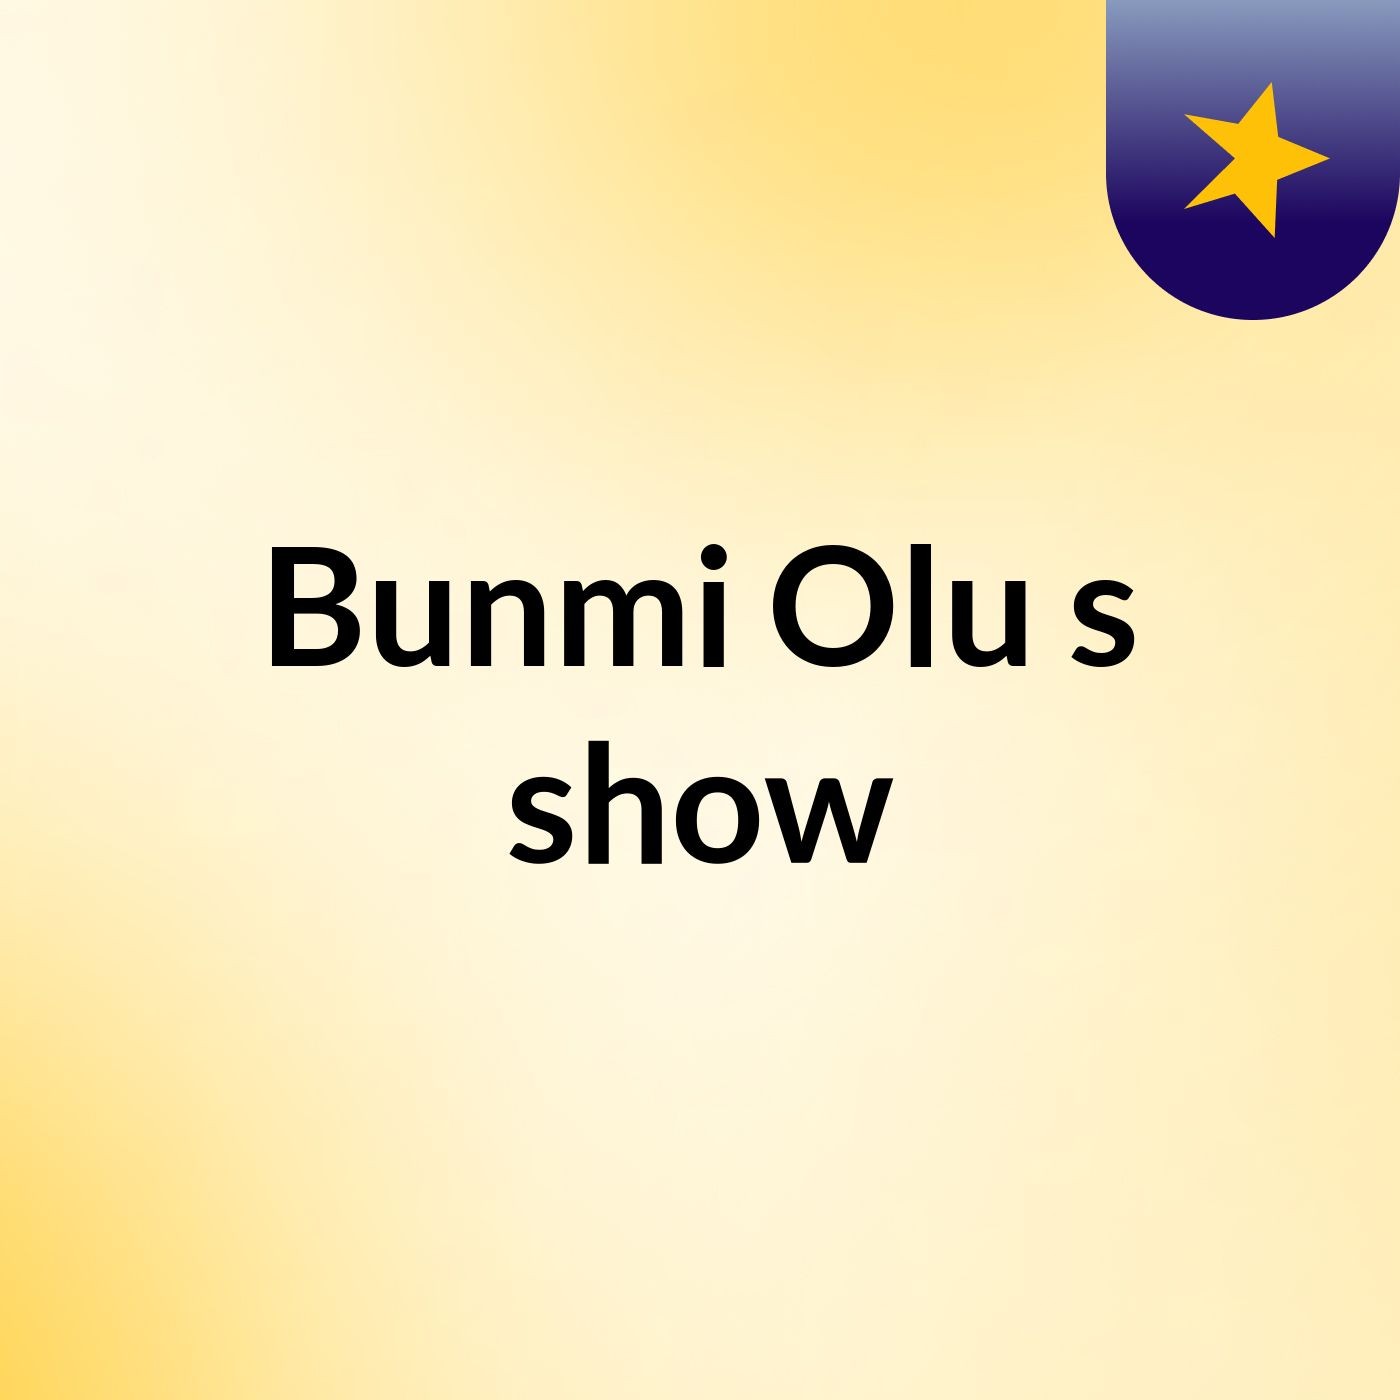 Bunmi Olu's show